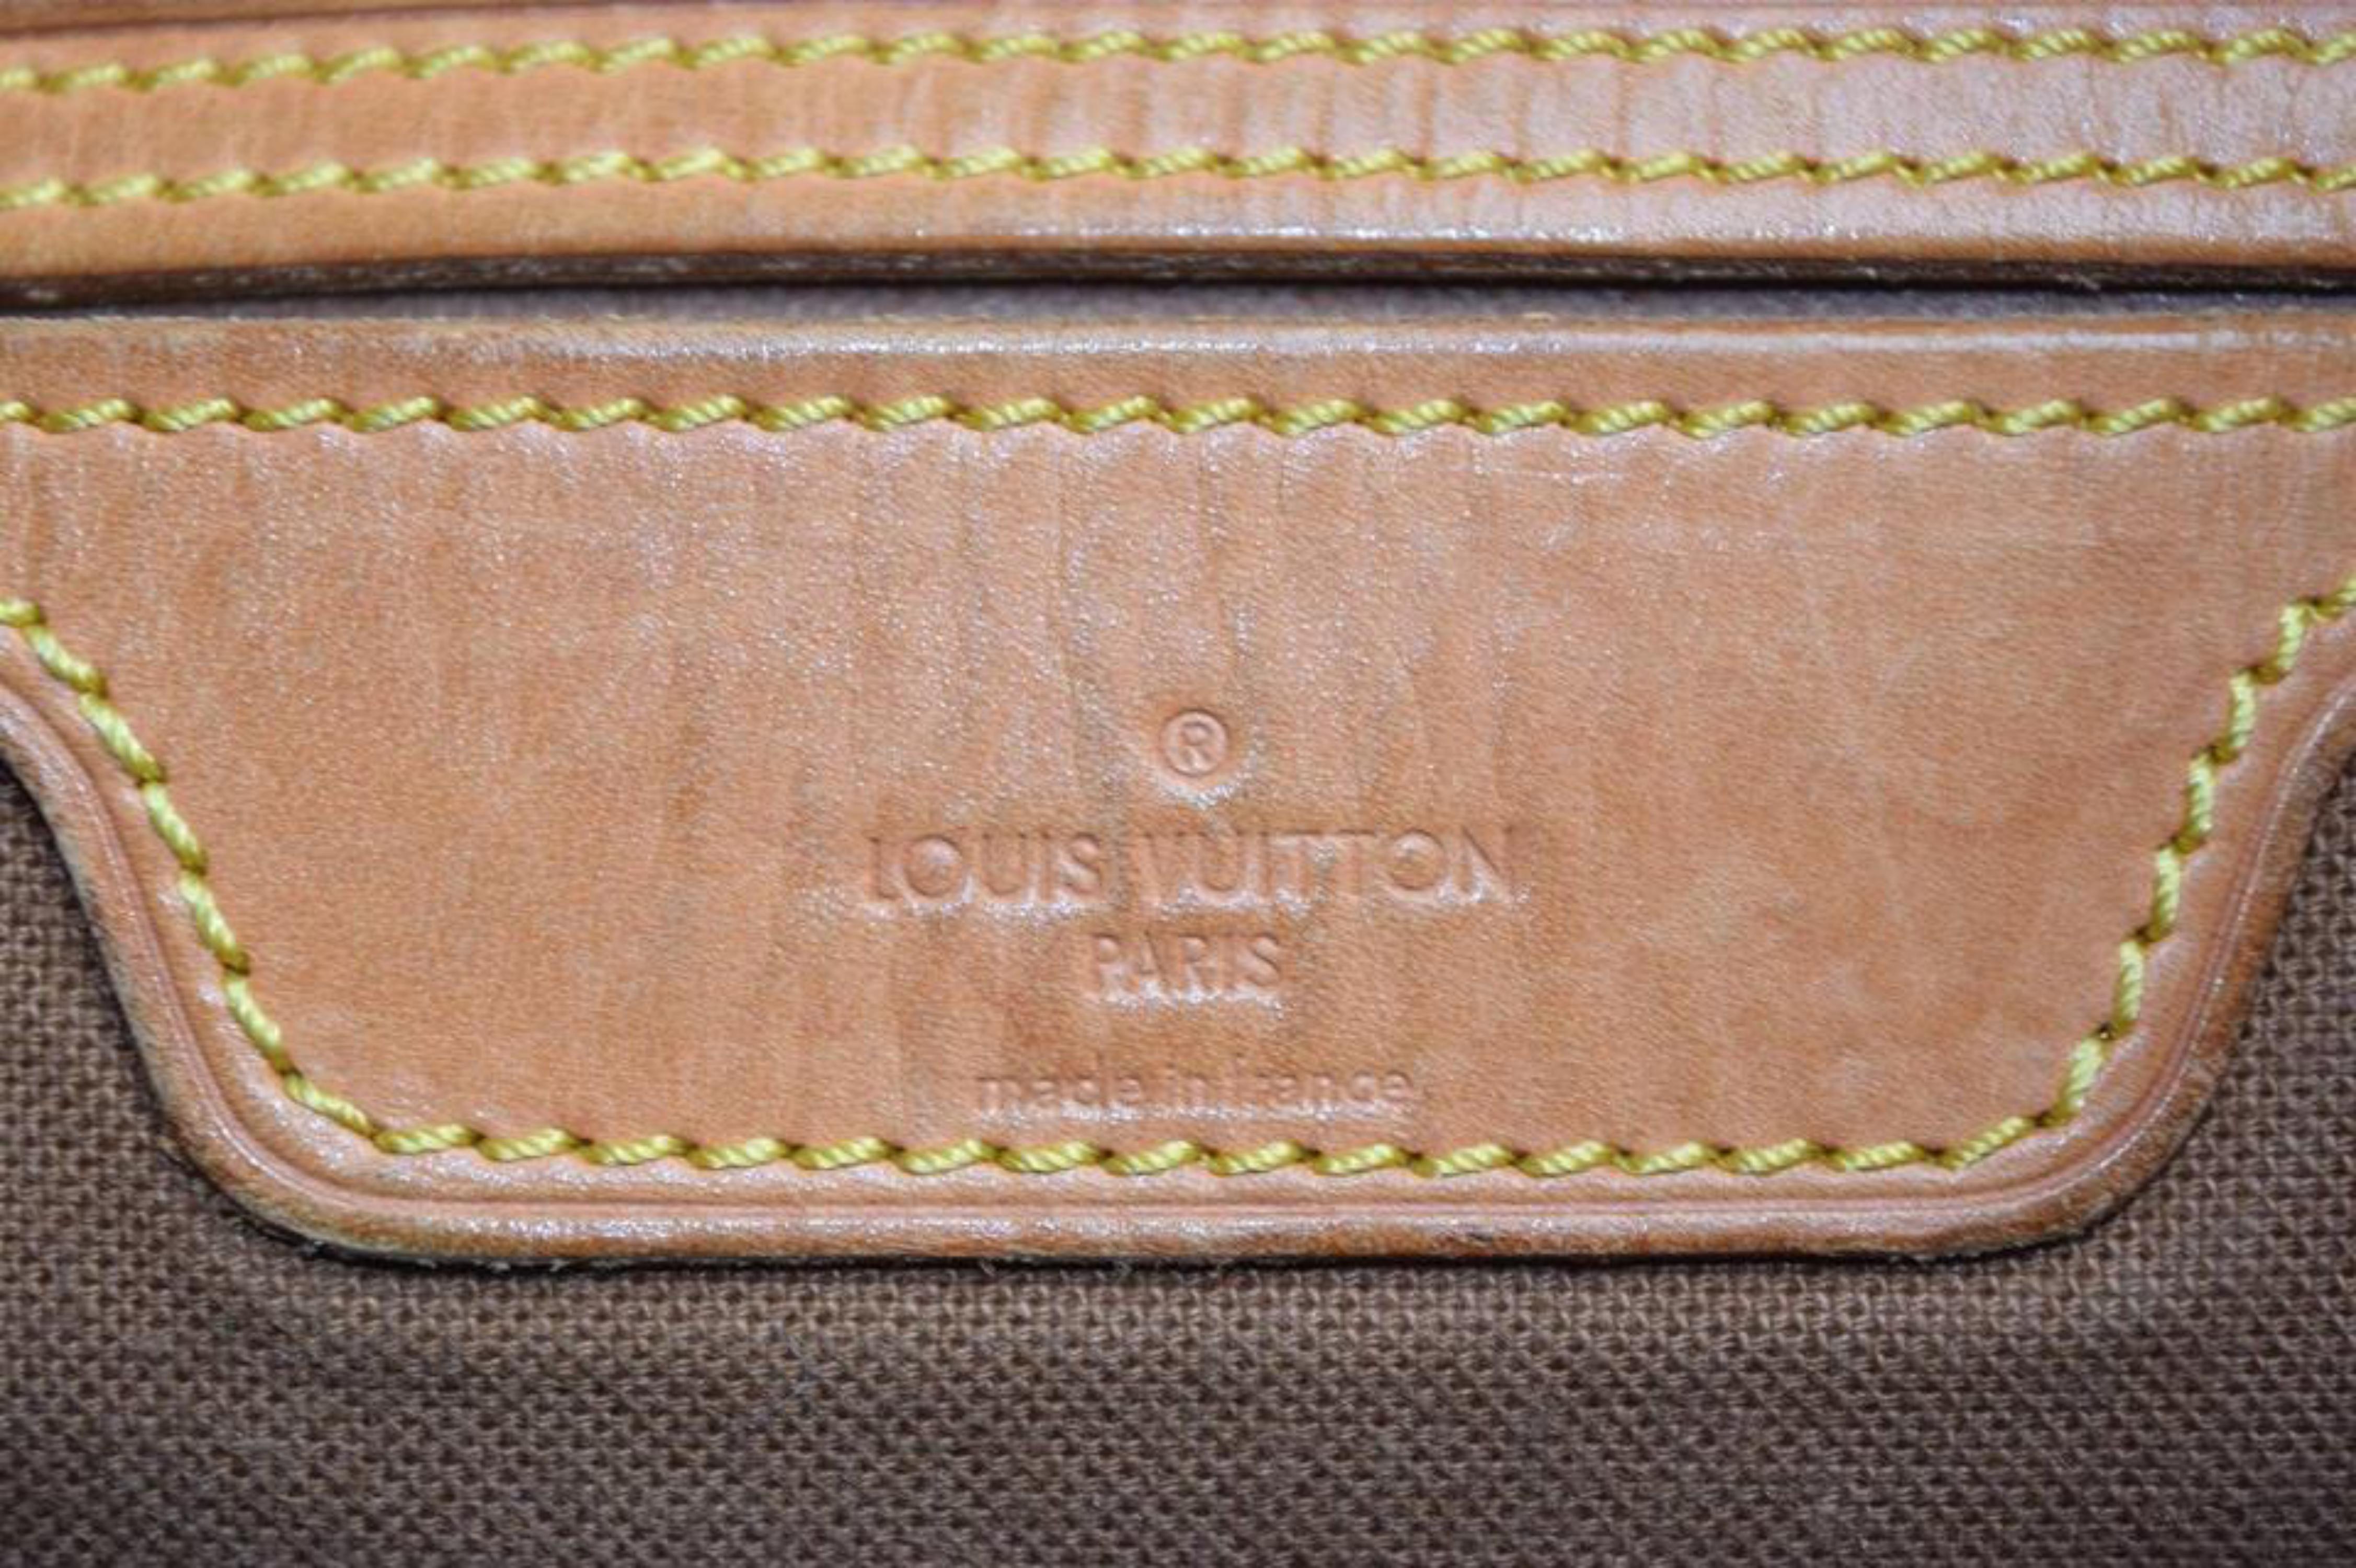 Louis Vuitton Boulogne Ballad Monogram R865843 Brown Coated Canvas Shoulder Bag For Sale 2